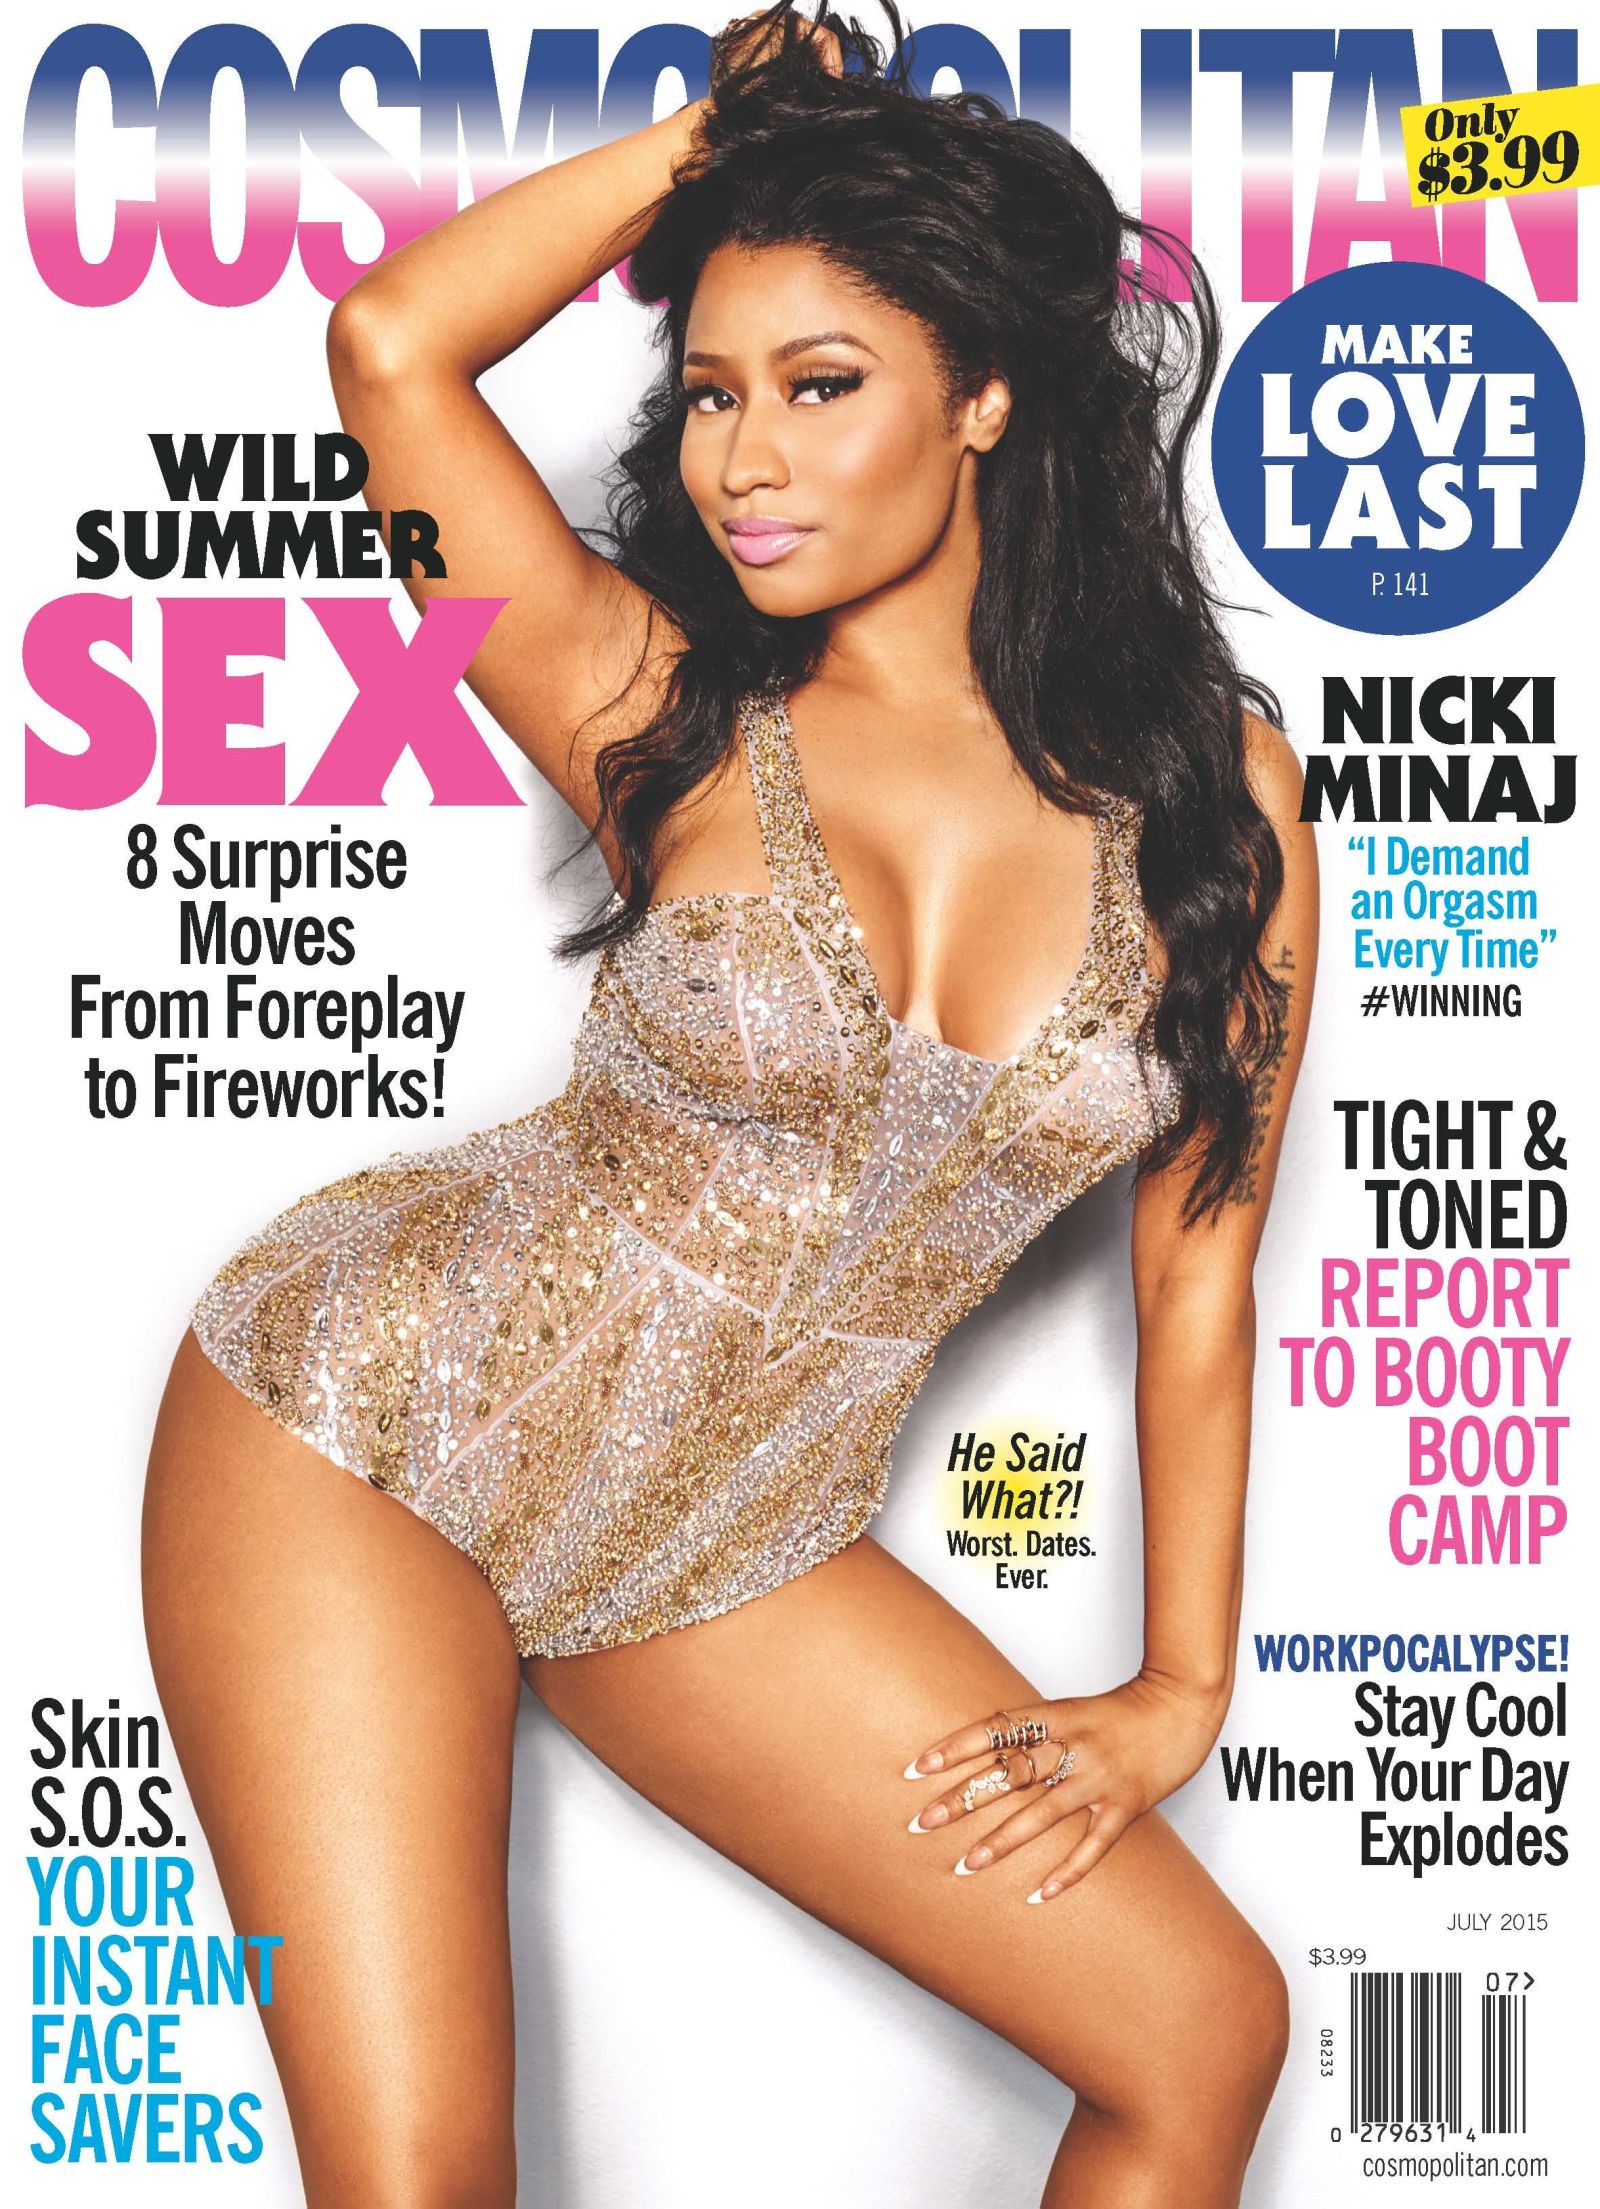 Imagen Cosmo Mag 2015 Cover Nicki Minaj Wiki Fandom Powered By Wikia 